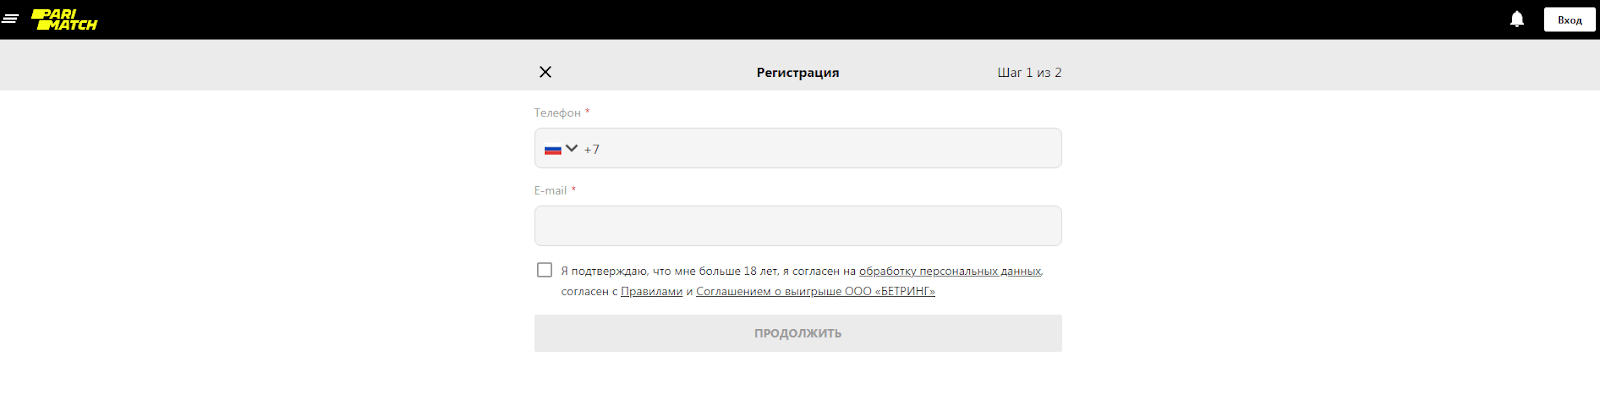 Регистрация на официальном сайте БК Париматч